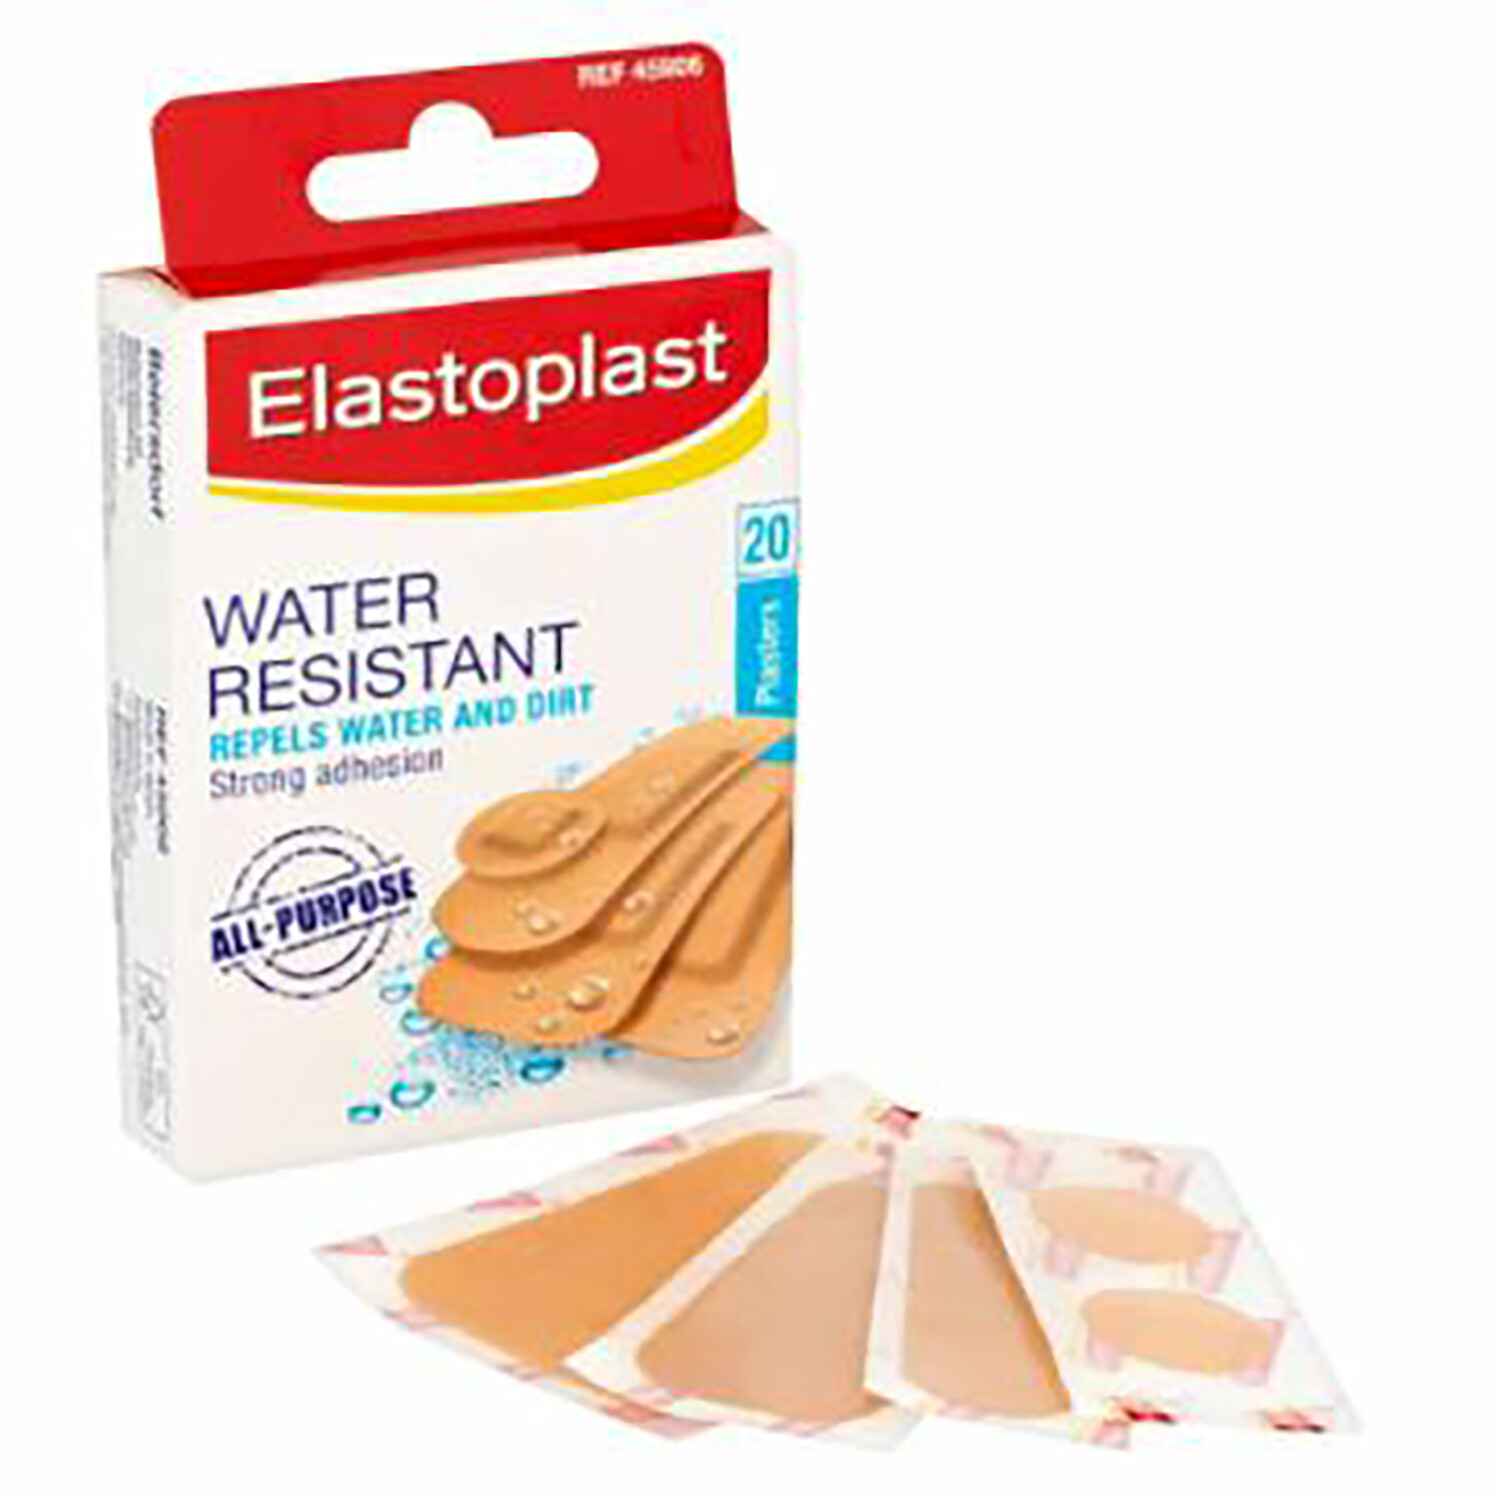 Pack of 20 Elastoplast Water Resistant Plasters Image 2